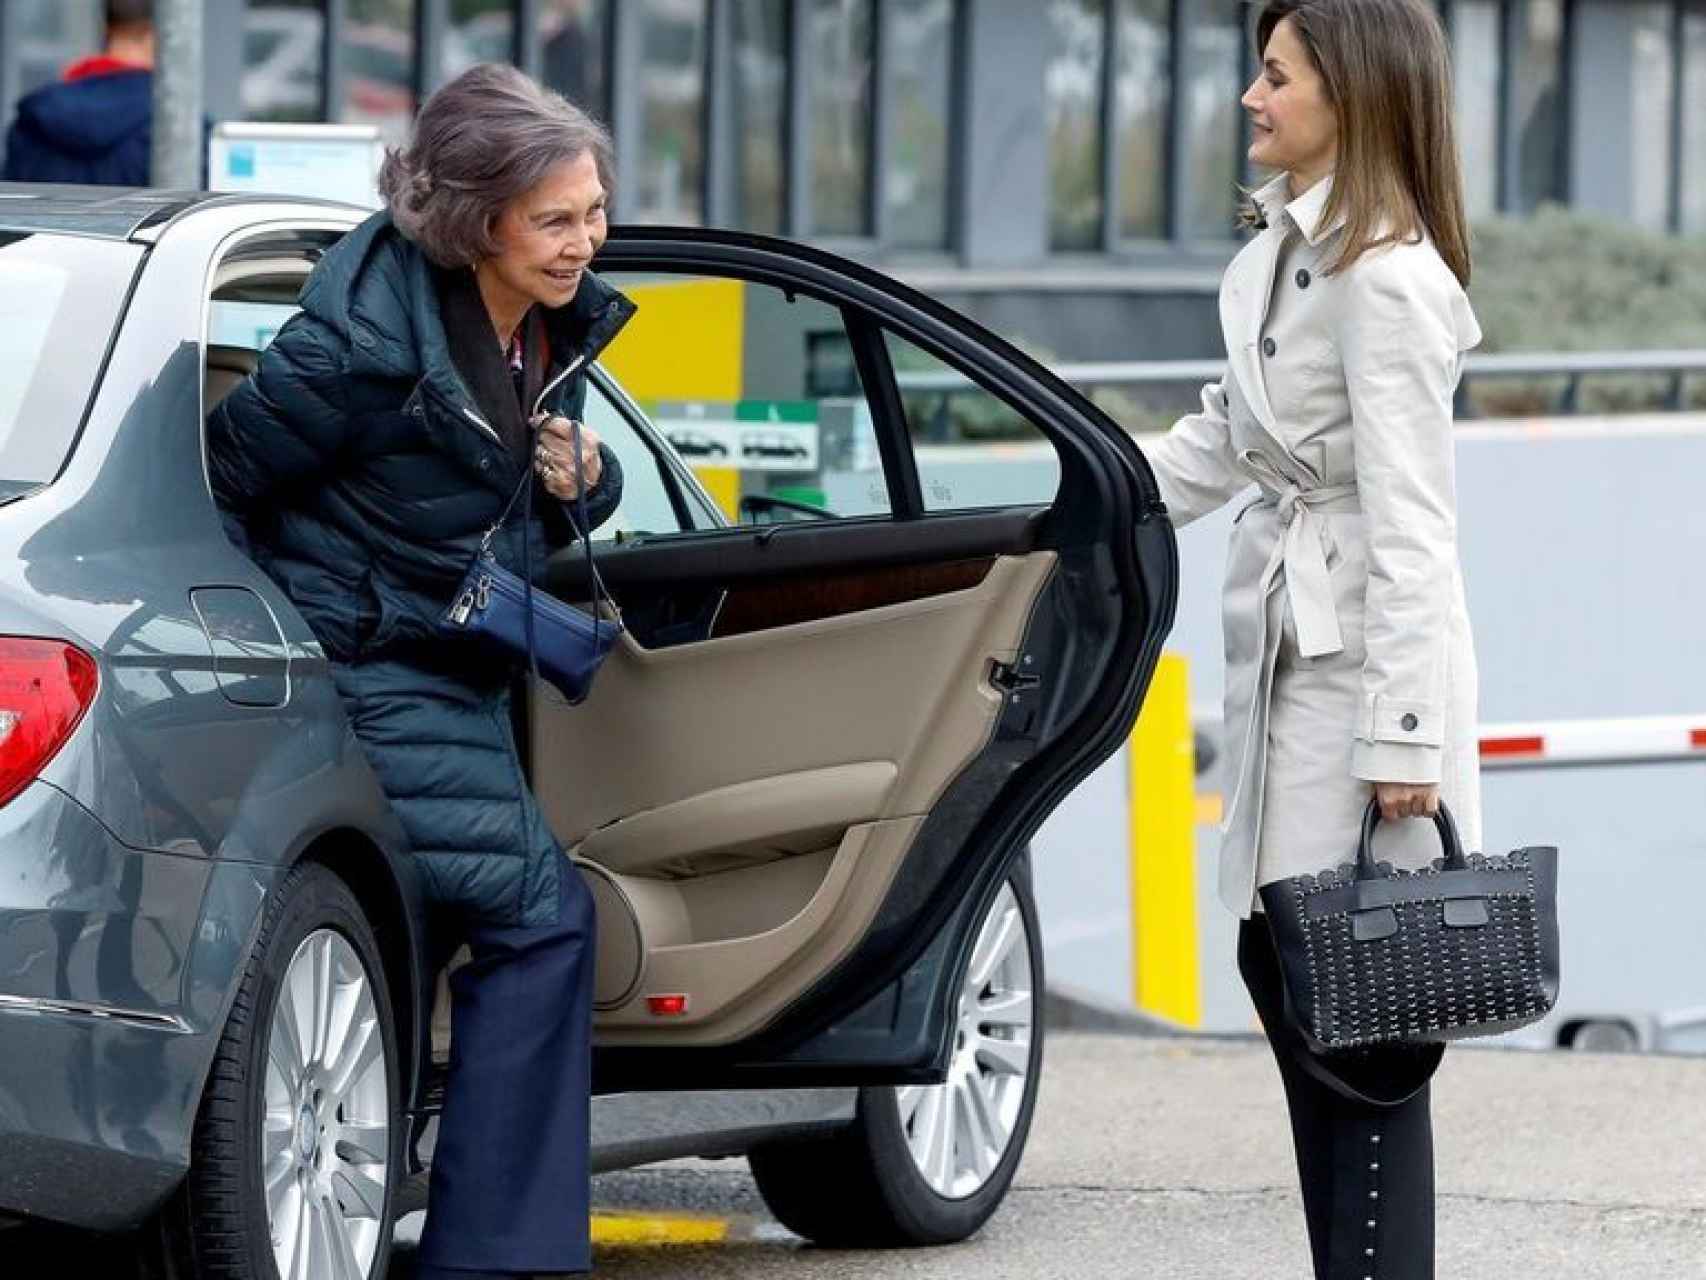 La reina Letizia abre la puerta del coche a la reina Sofía.